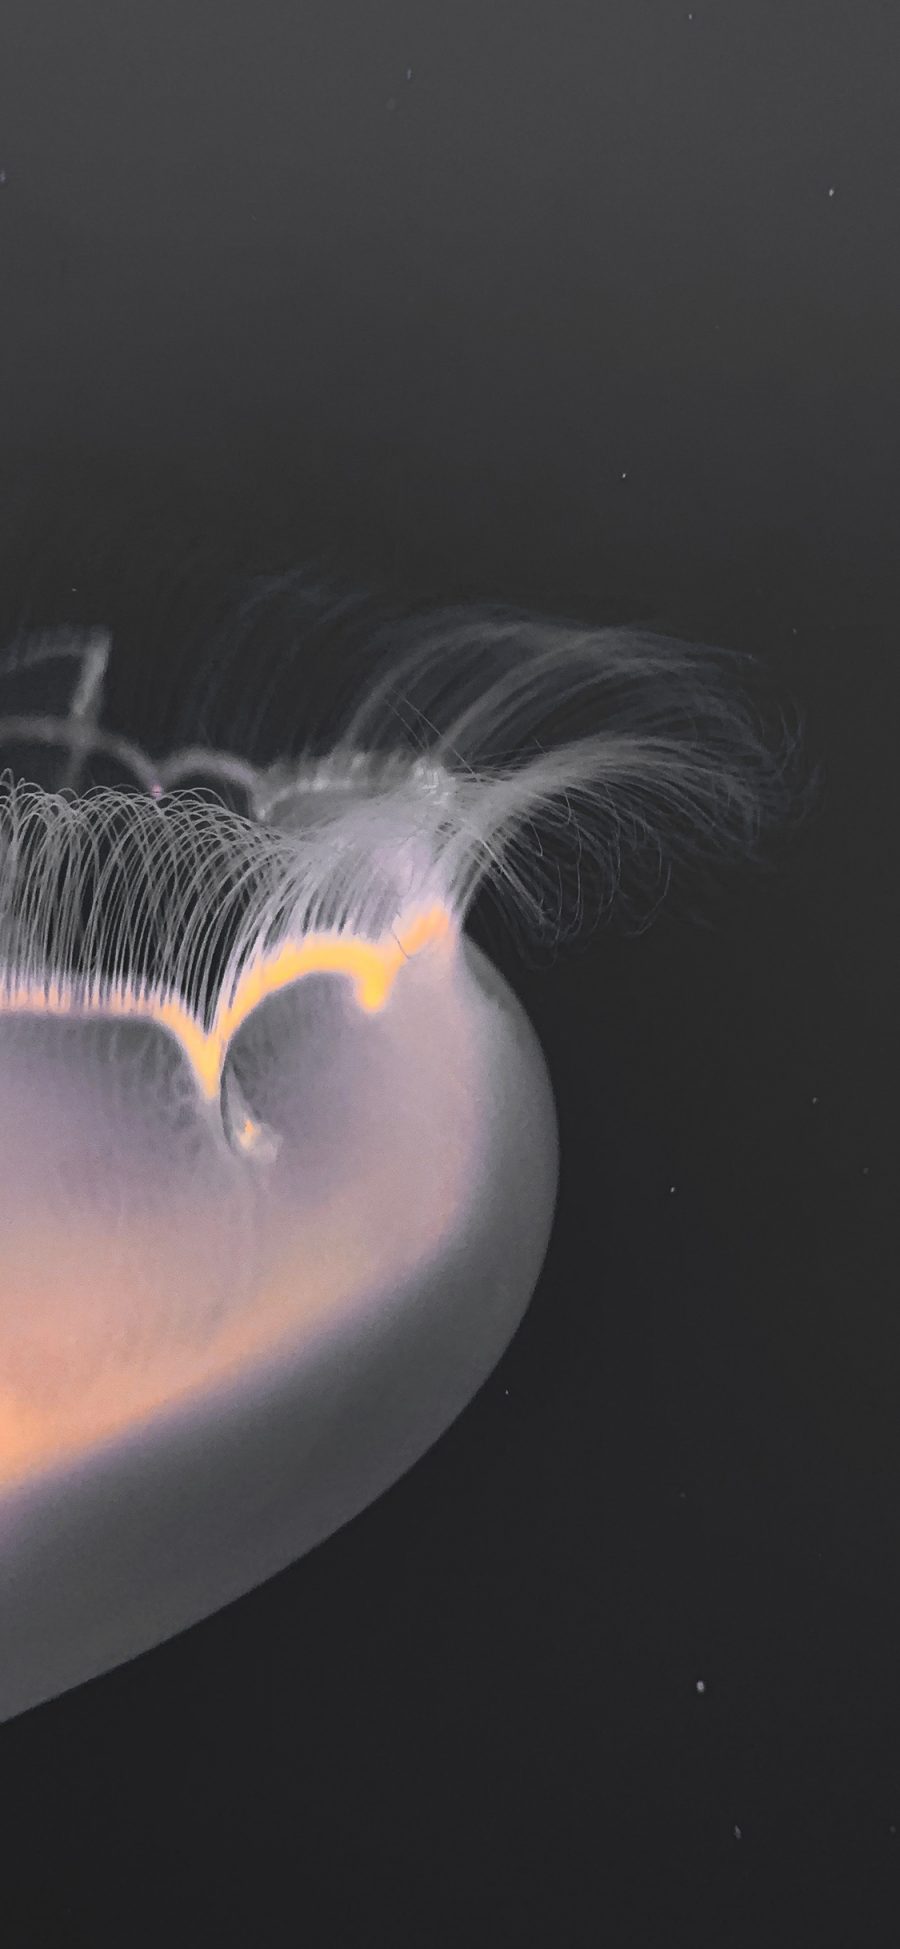 [2436×1125]水母 海洋生物 透明 独有 苹果手机壁纸图片